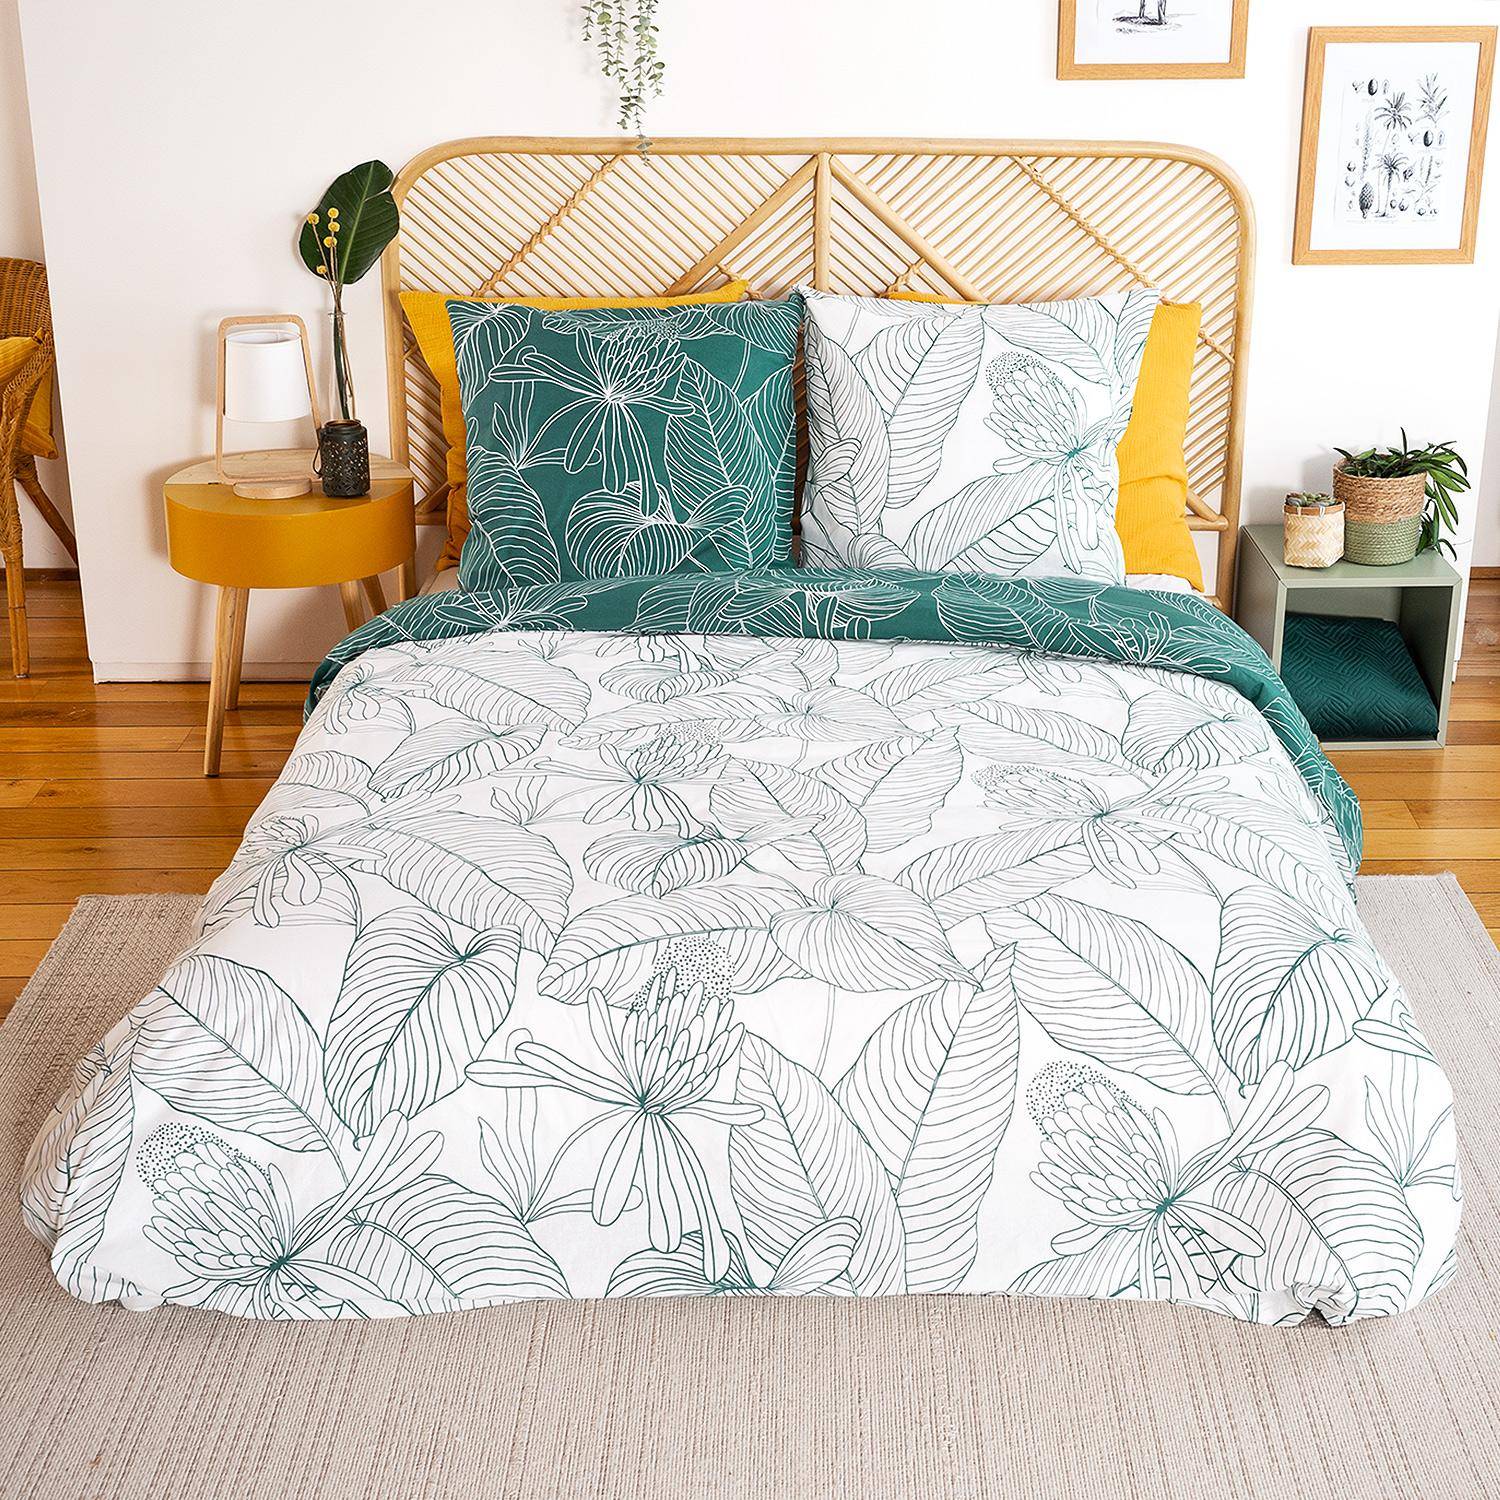 Wendebettwäsche-Set mit Blumendruck aus weicher Baumwolle, 1 Bettbezug, 2 Kissenbezüge 260x240cm - Selvia,sweeek,Photo2